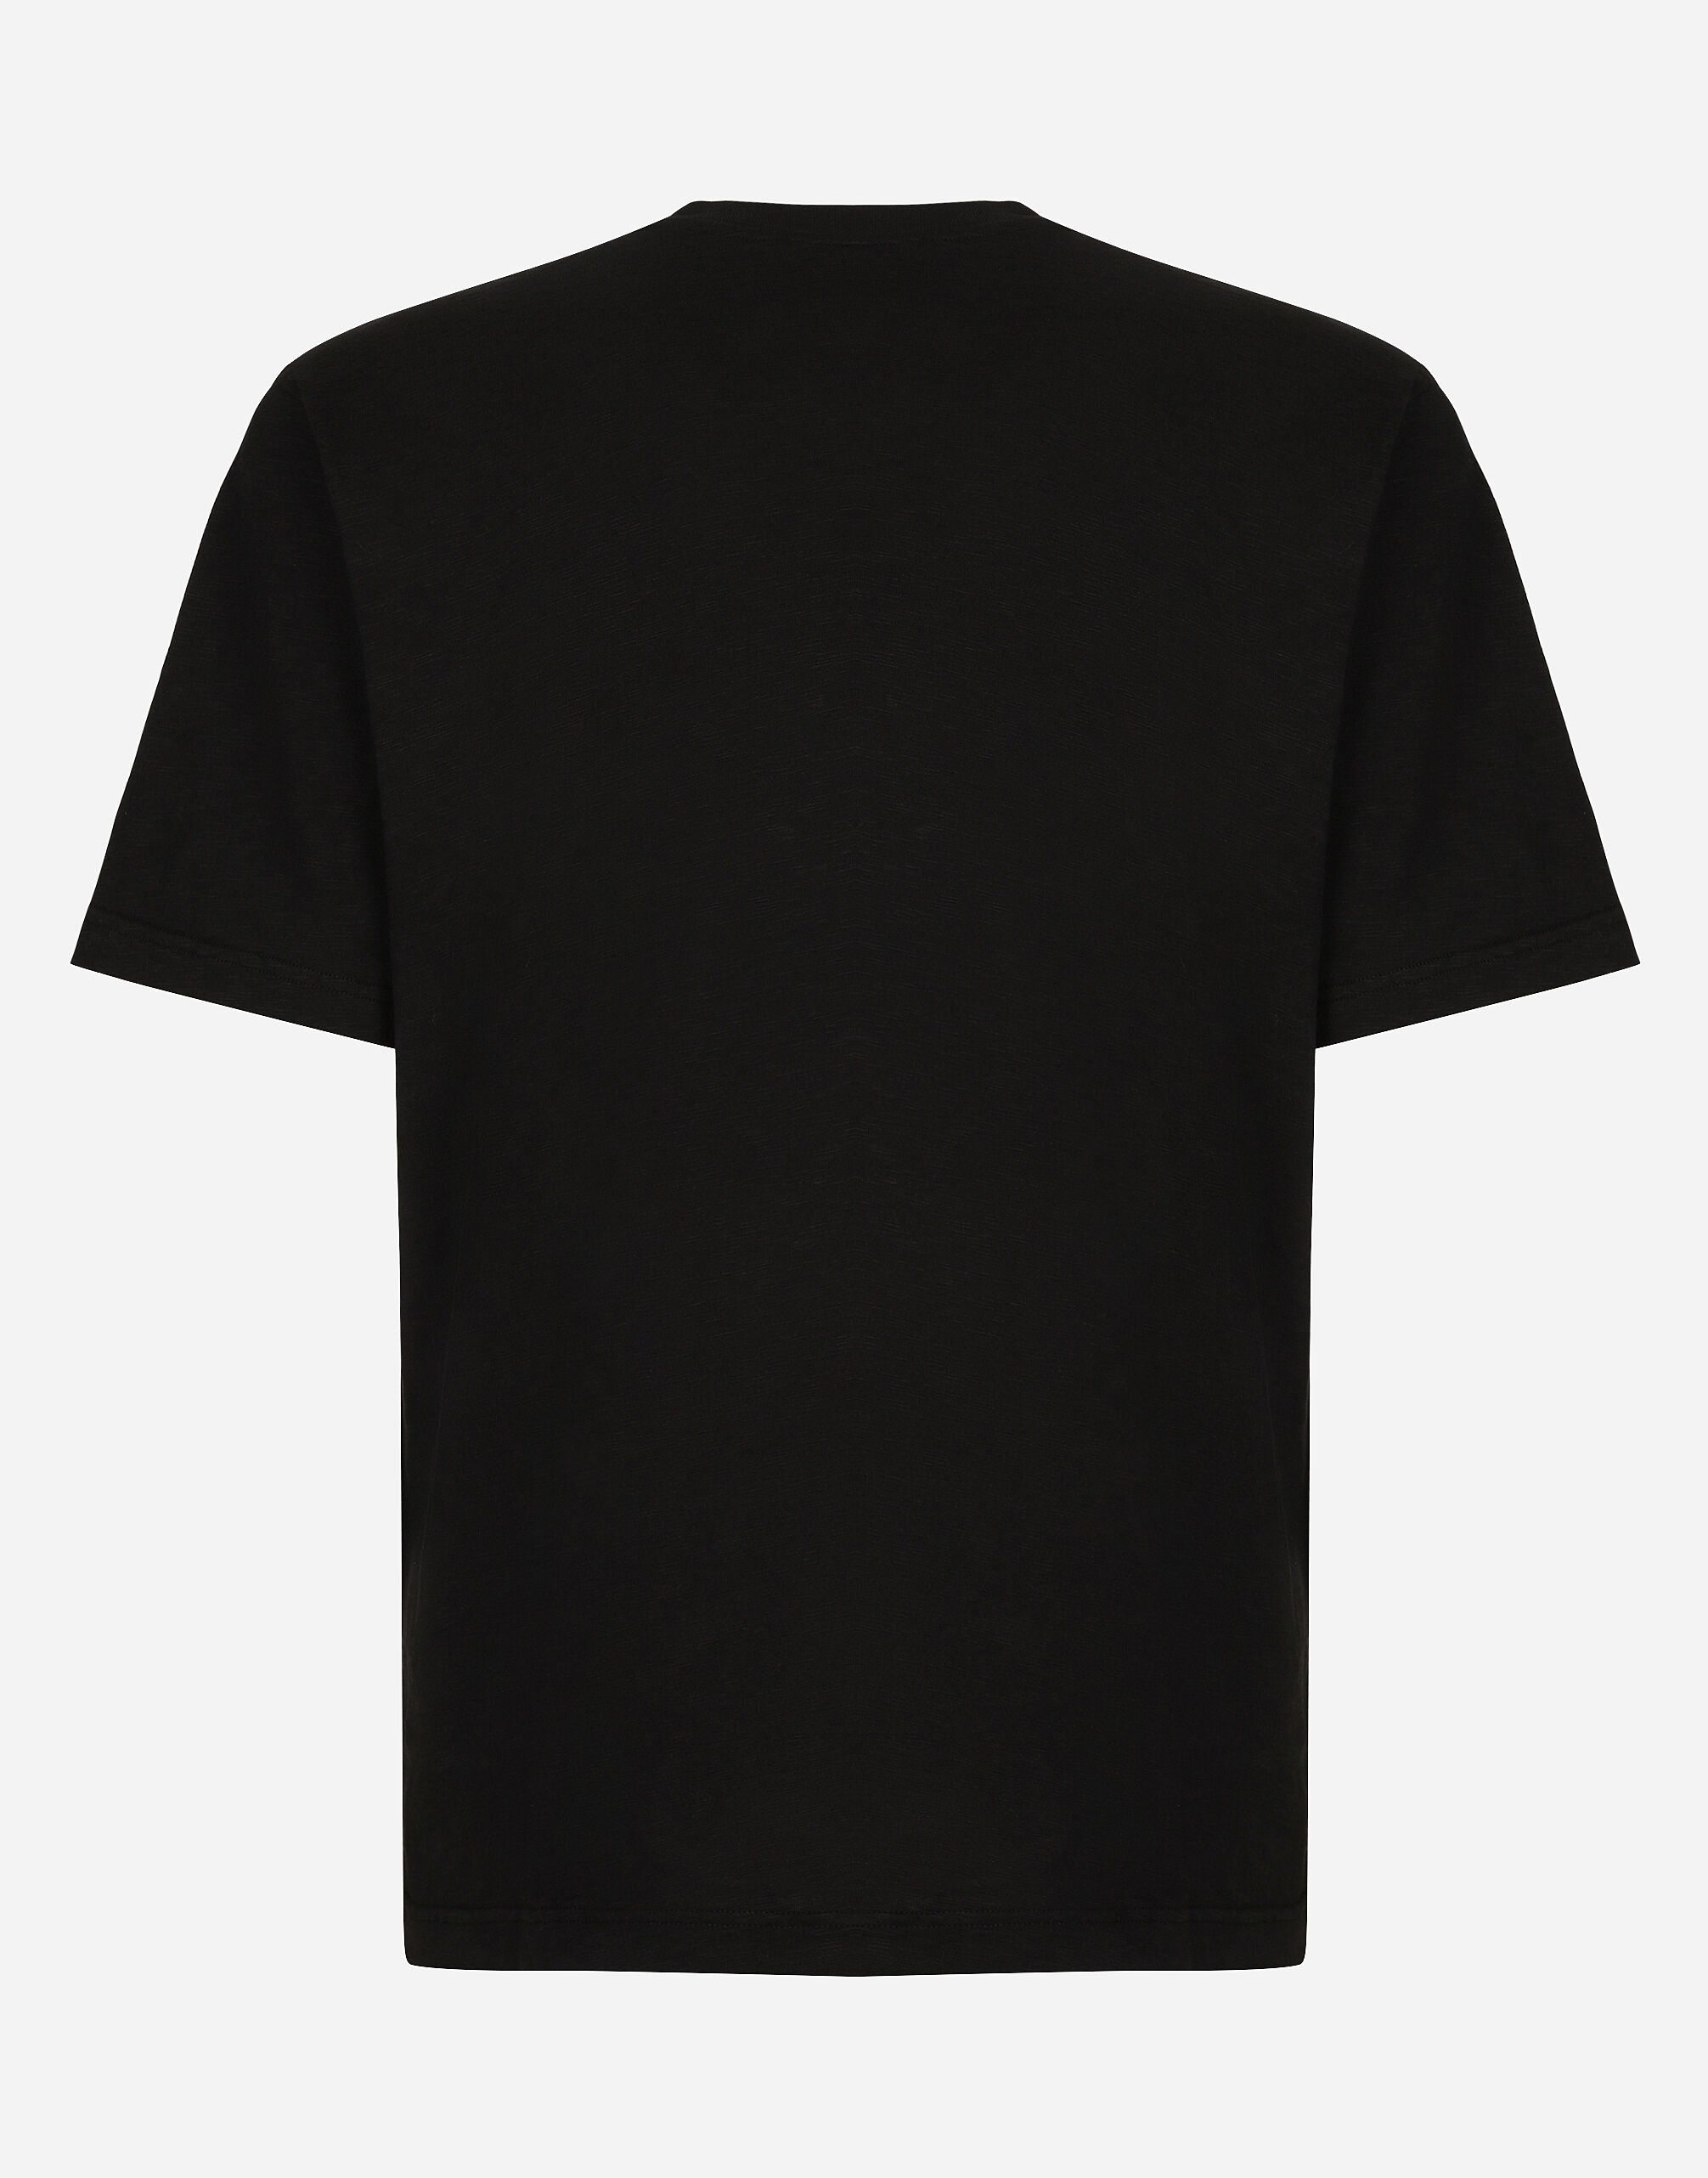 ブラックのメンズ Cotton T-shirt with Dolce&Gabbana logo 